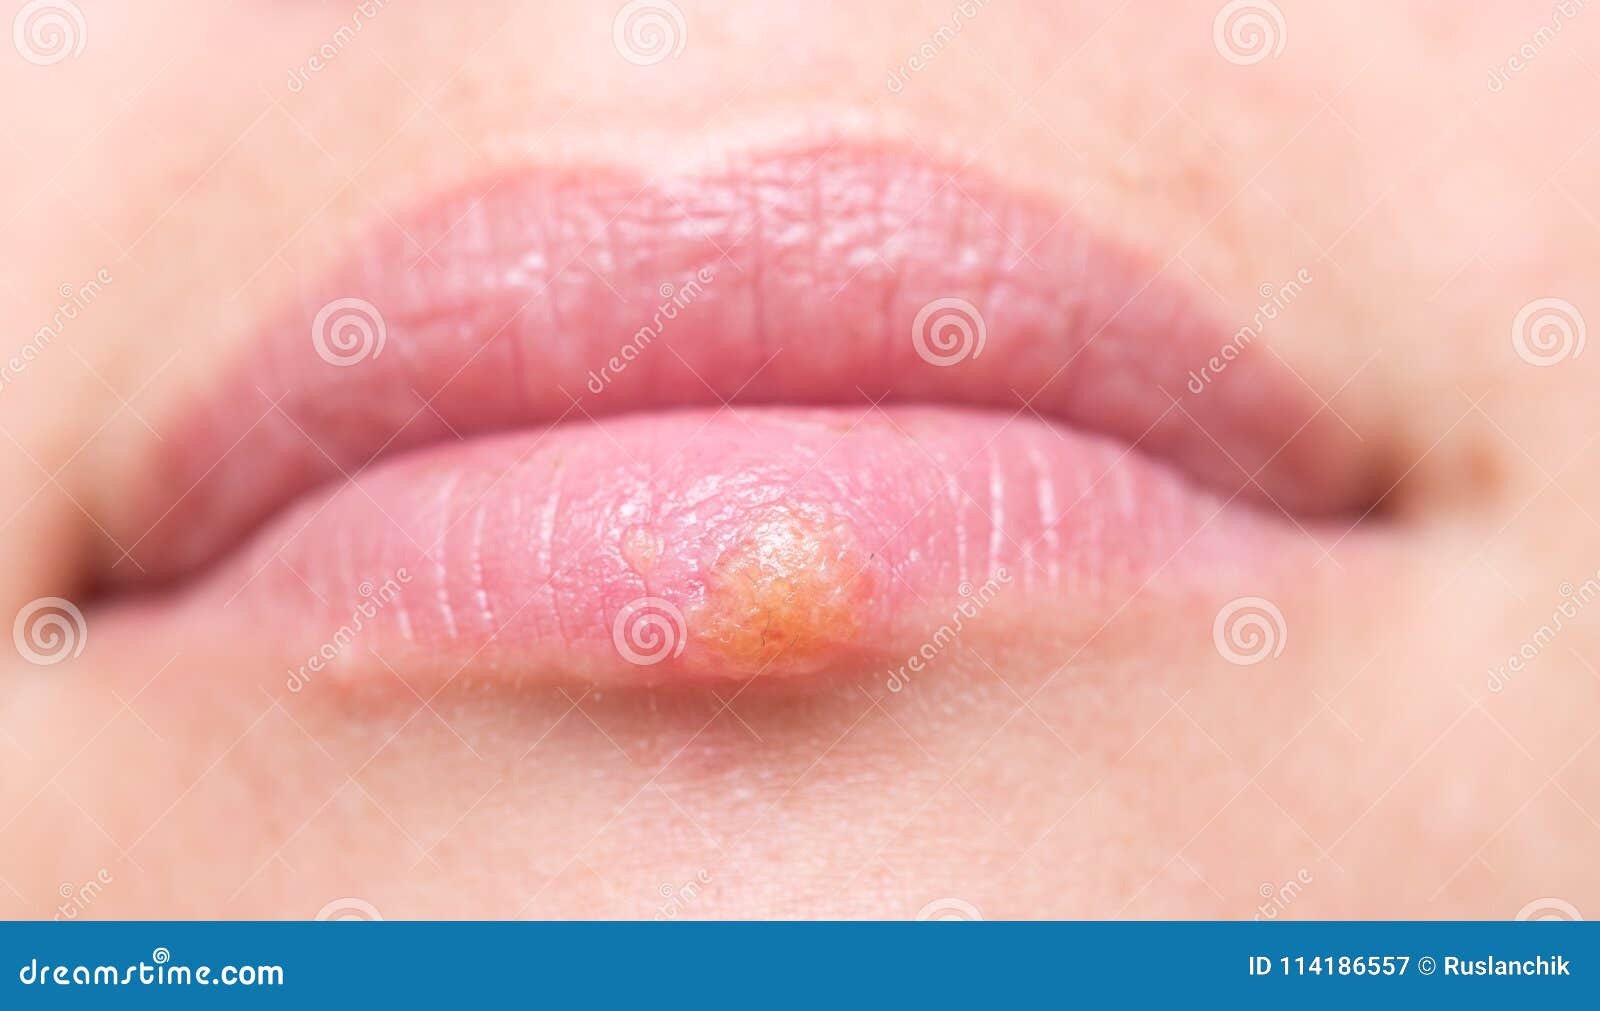 嘴唇上出现疱疹病症的妇女. 病毒感染的治疗 库存照片. 图片 包括有 成人, 伤害, 不适, 憎恶, 生了酒垢 - 232502918